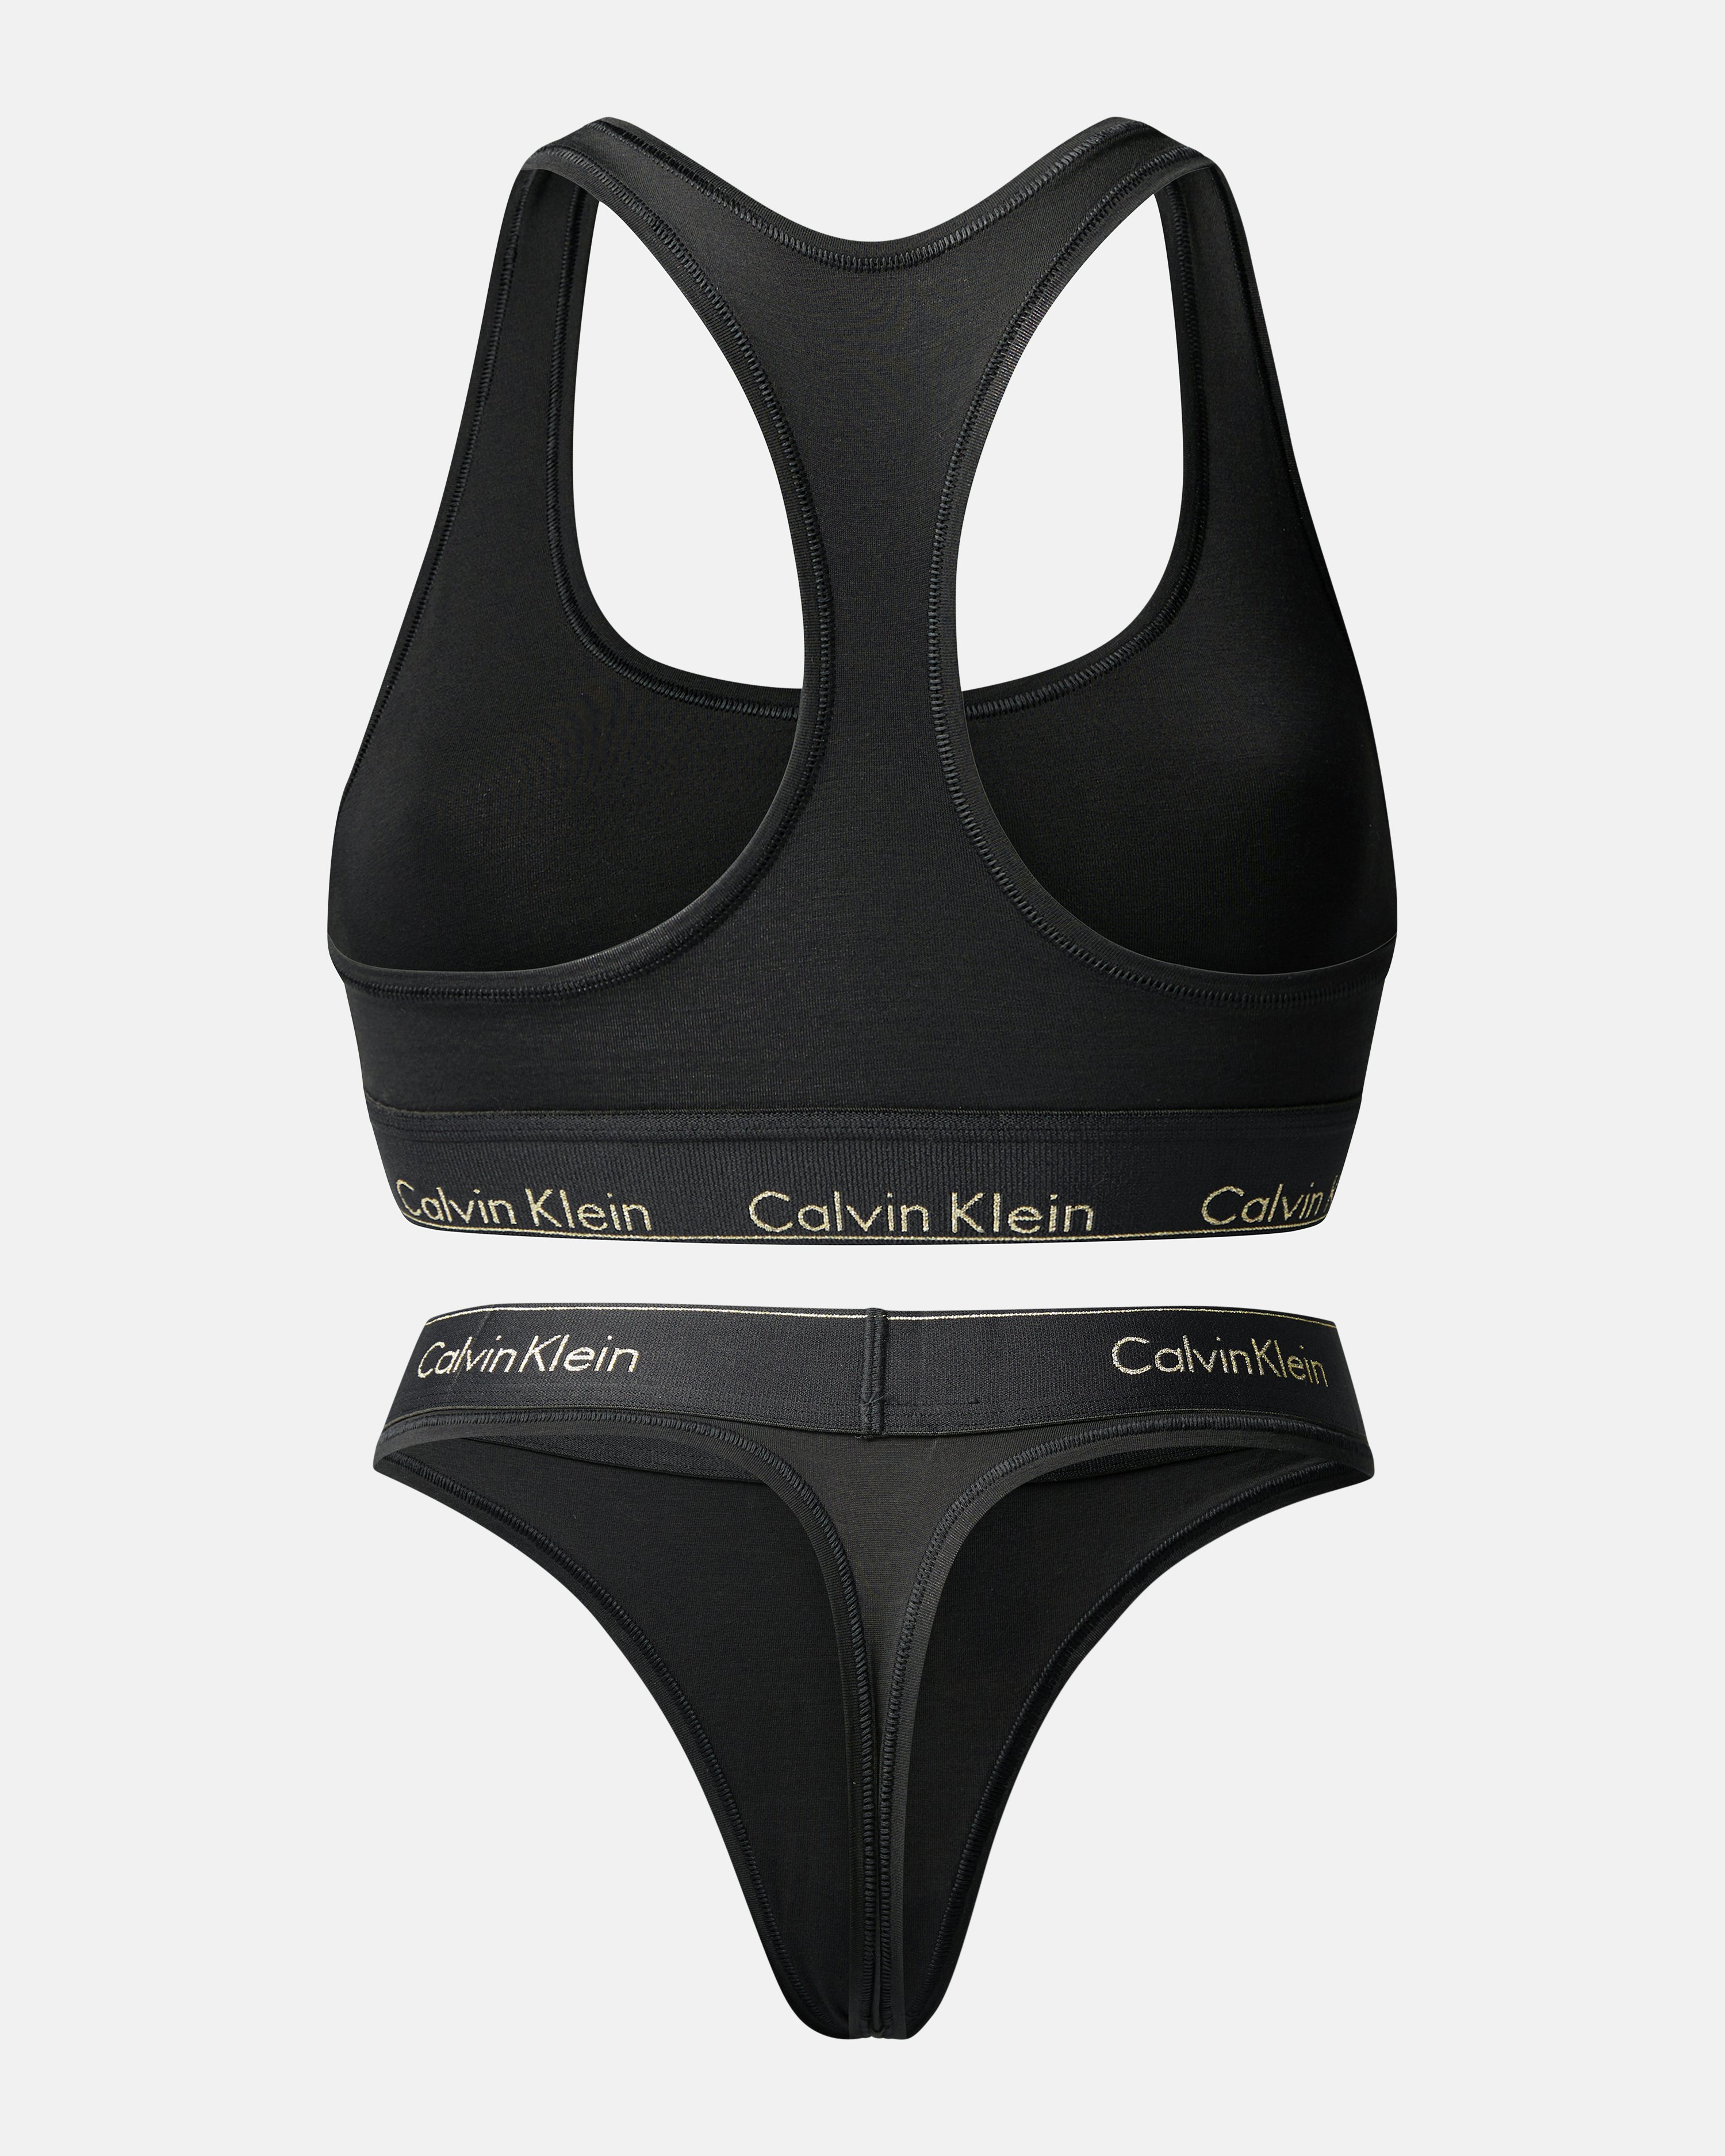  Calvin Klein Bra And Underwear Set